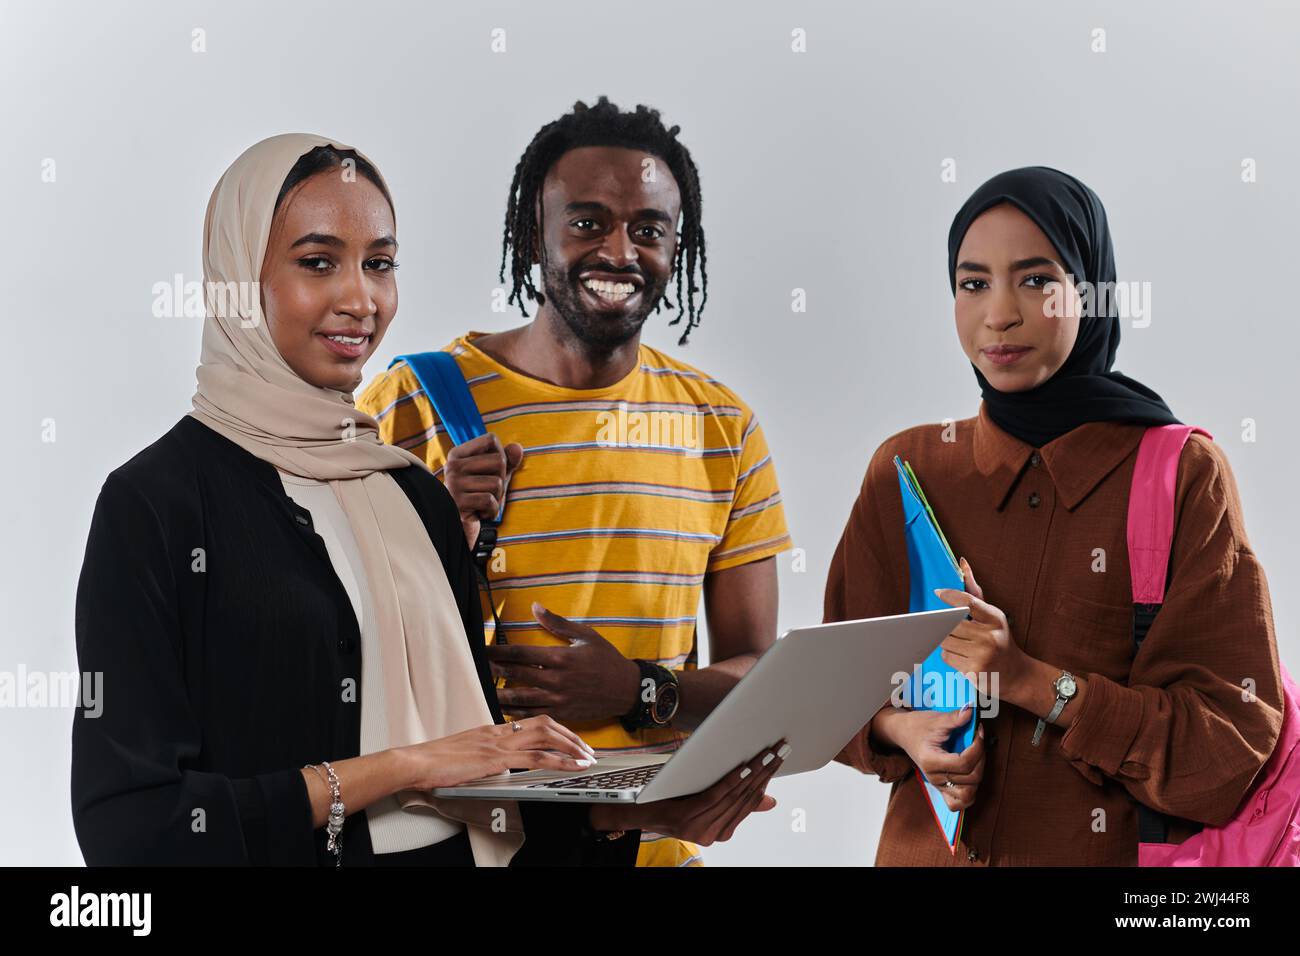 Un gruppo di studenti, tra cui una studentessa afroamericana e due donne che indossano hijab, sono uniti contro un'immacolata ba bianca Foto Stock